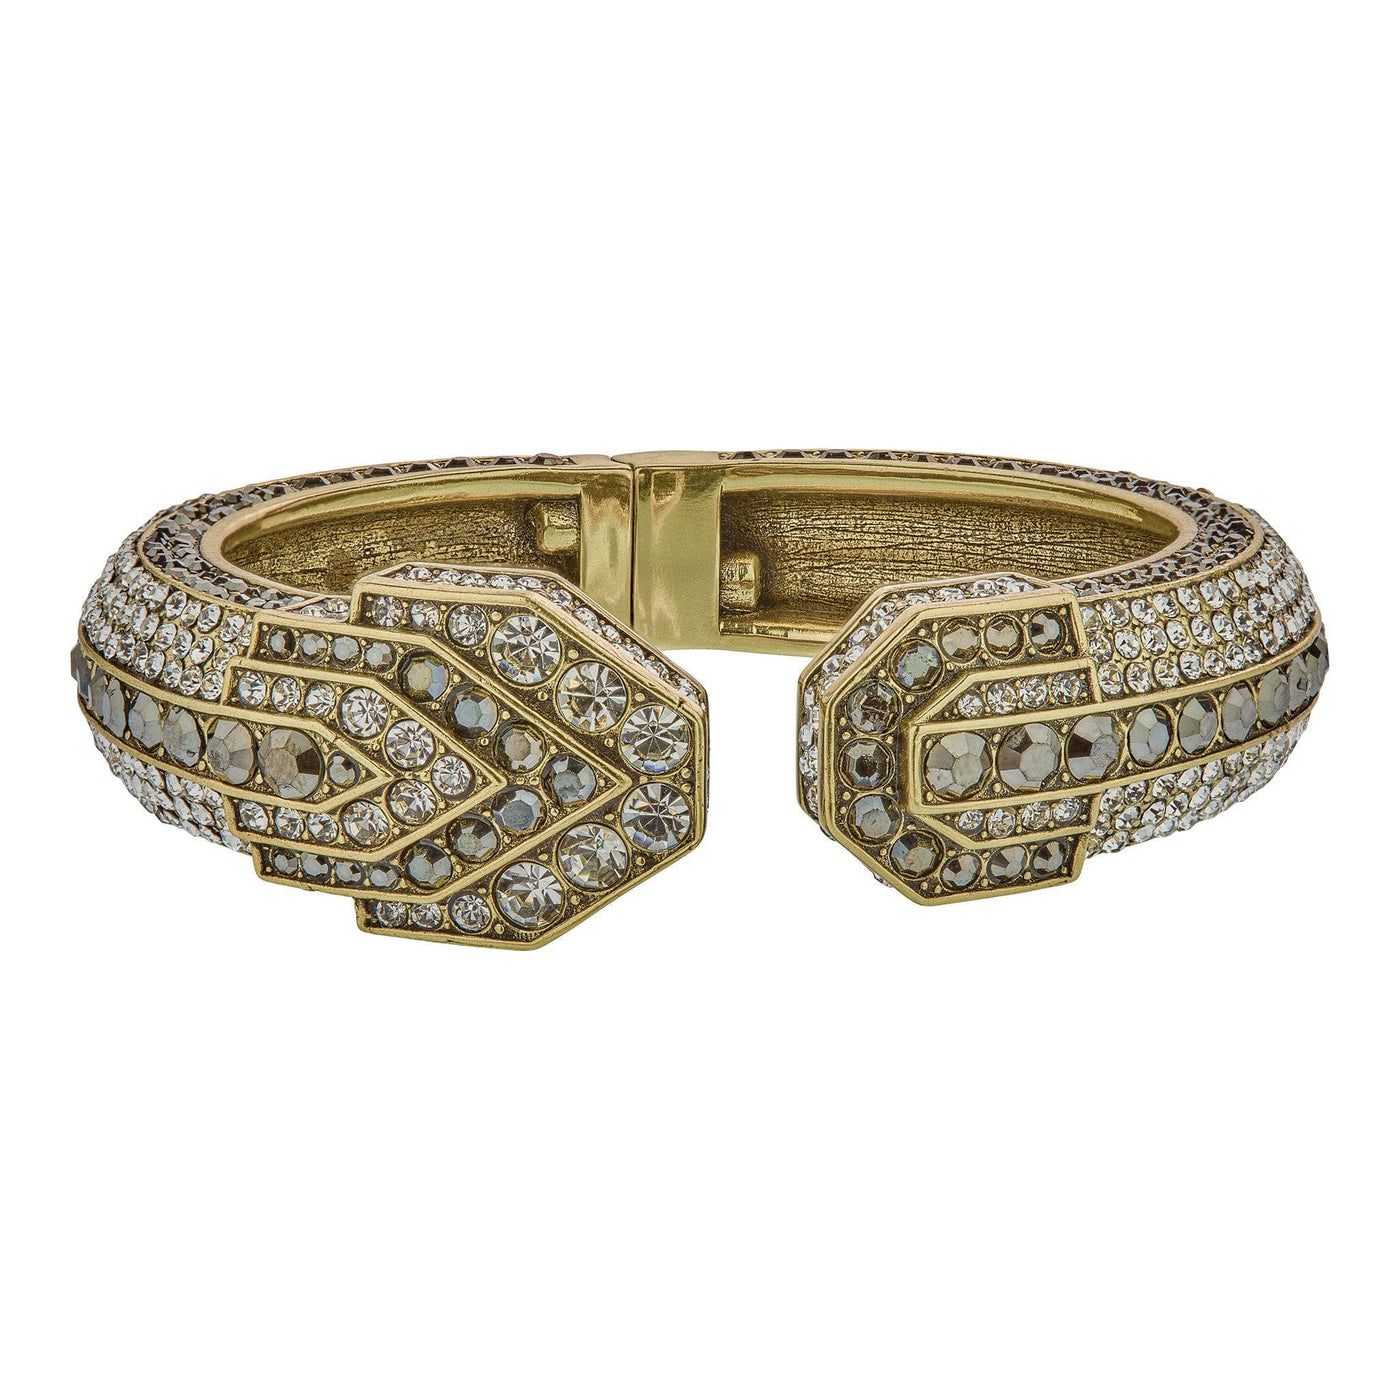 HEIDI DAUS®"Deluxe Decoratif" Crystal Bracelet